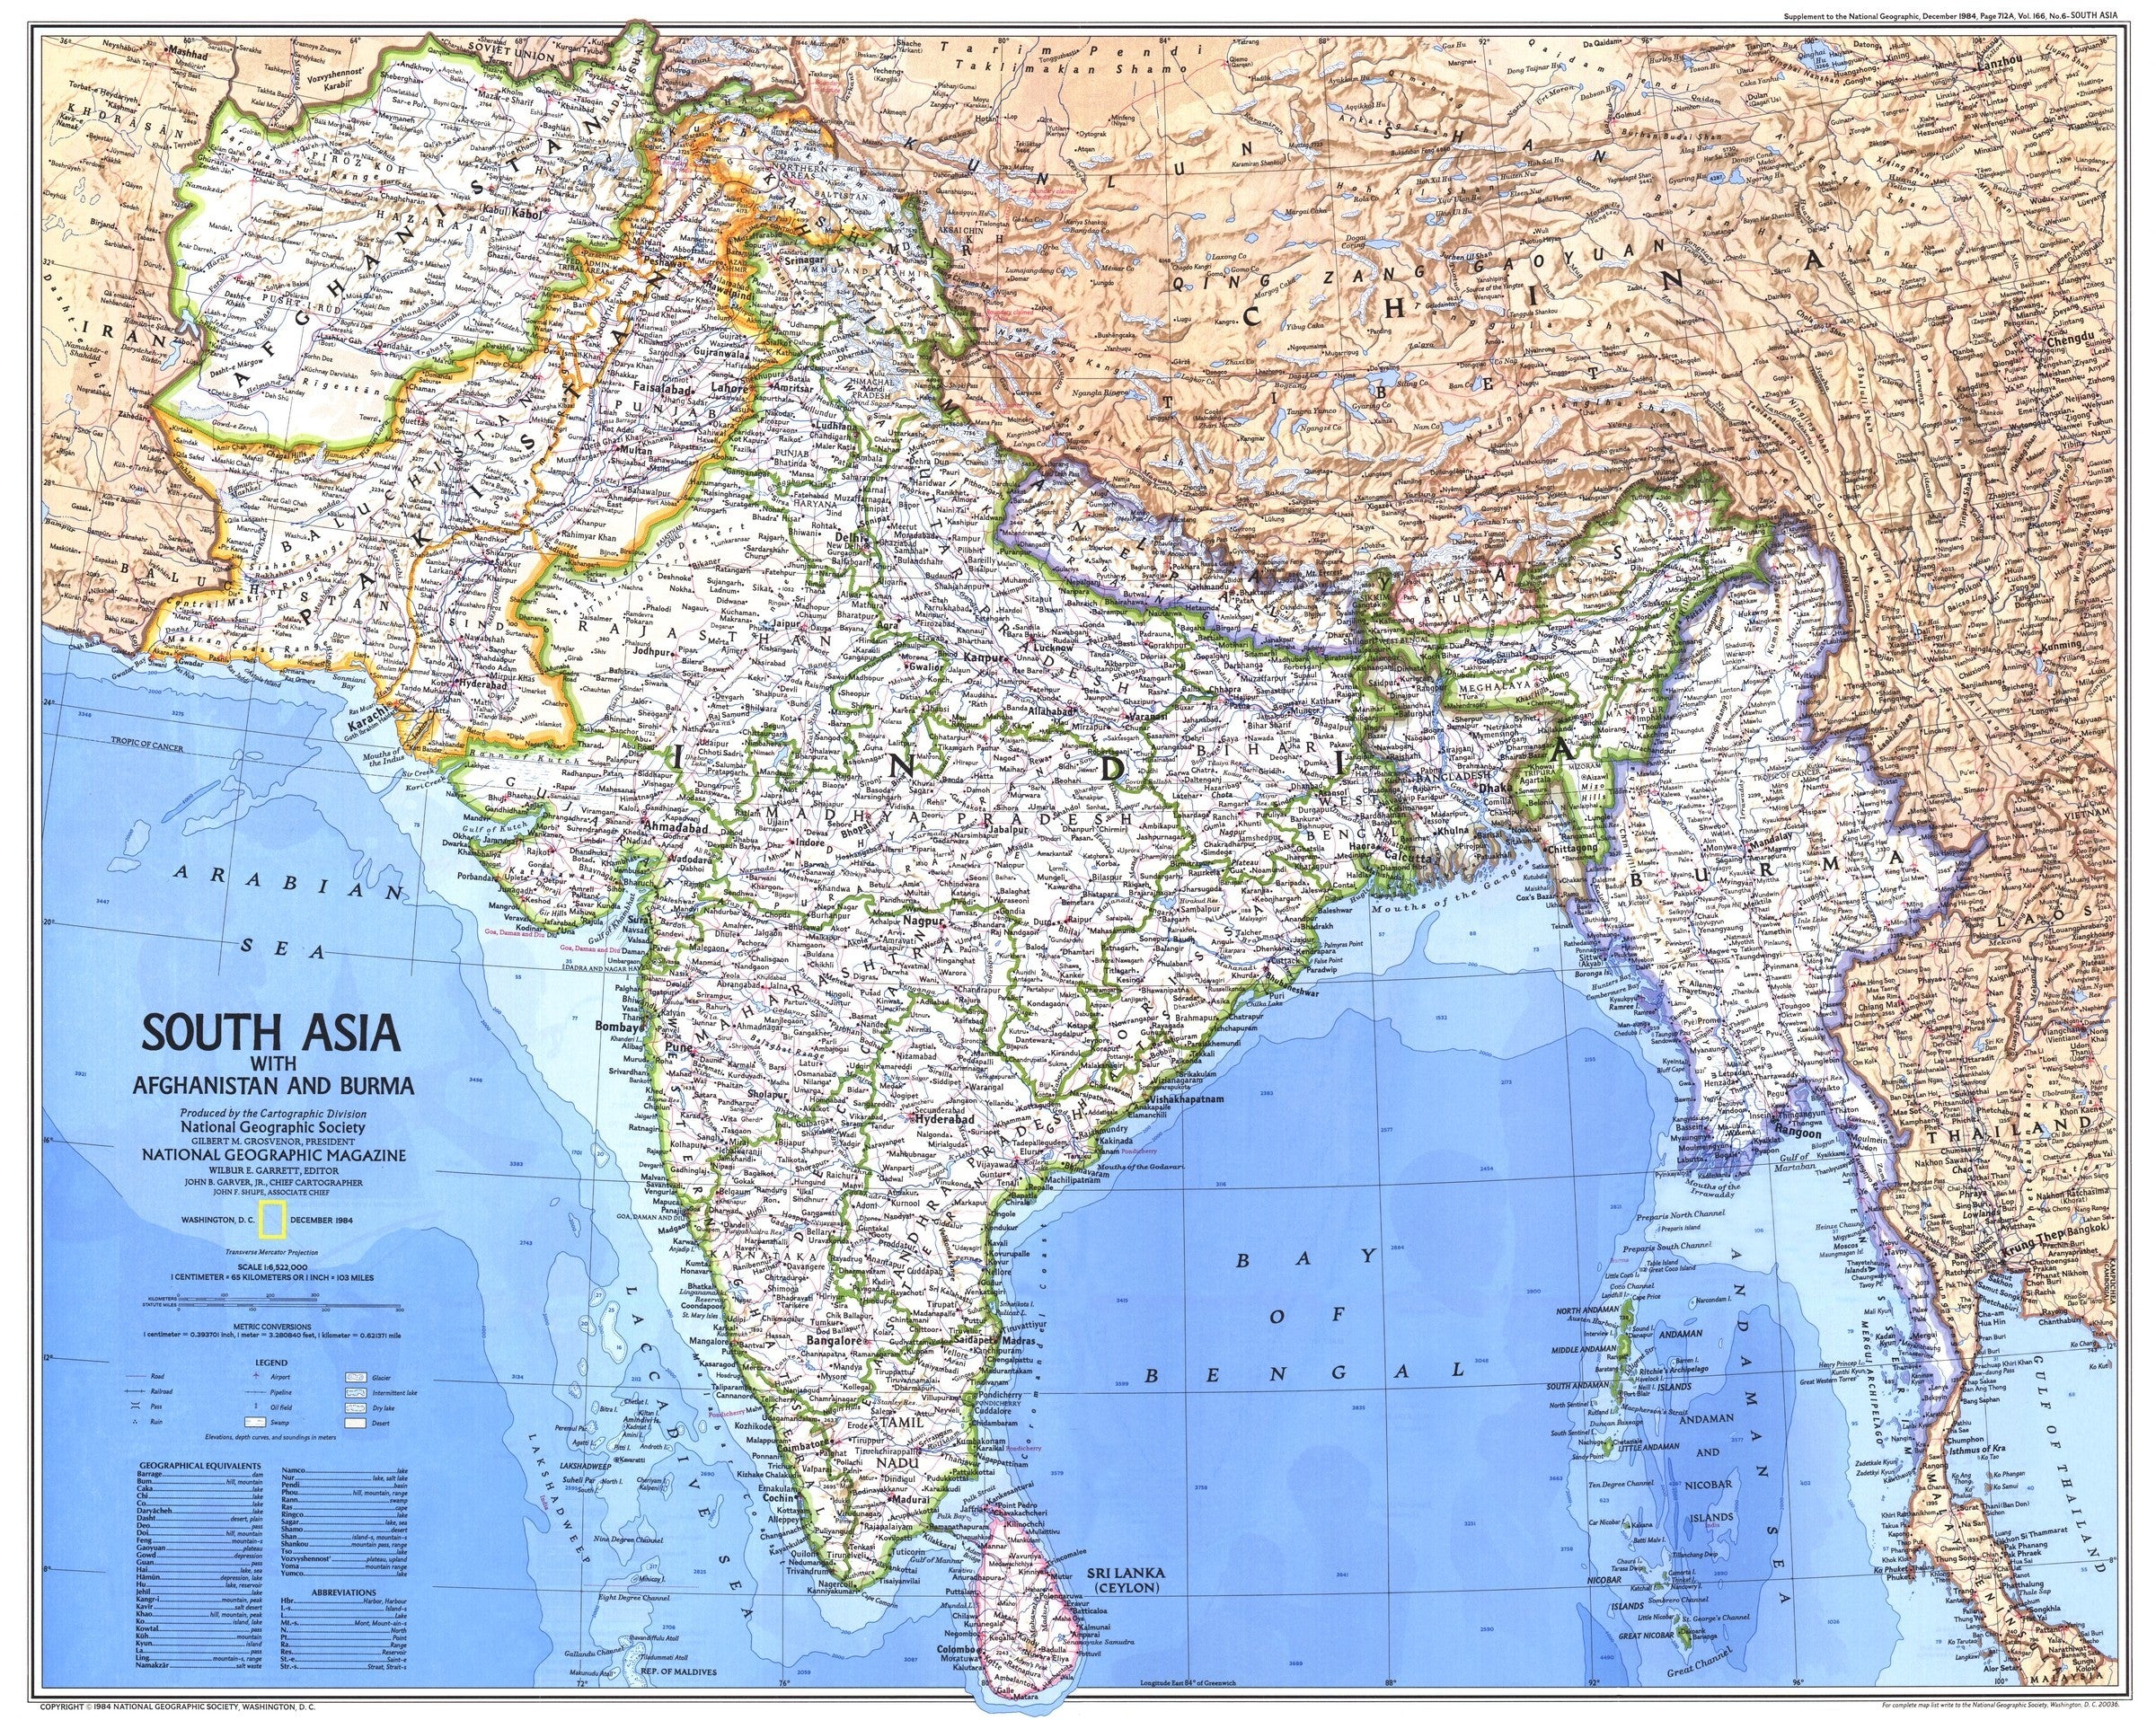 South Asia With Afghanistan And Burma Map 1984 | Maps.com.com